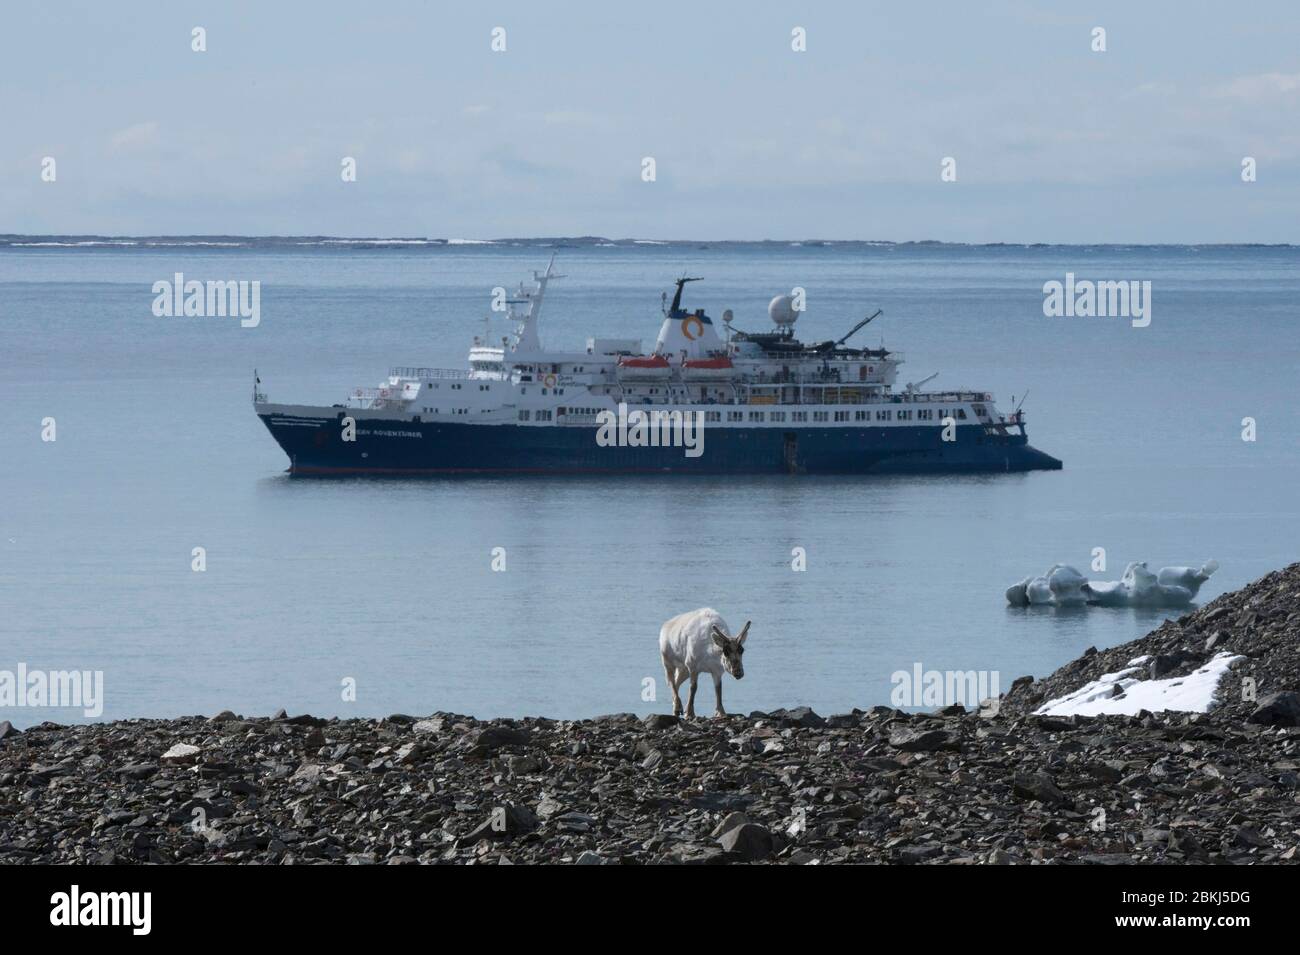 Isbjornhamna, Hornsund bay, Spitsbergen, Svalbard Islands, Norway, Stock Photo